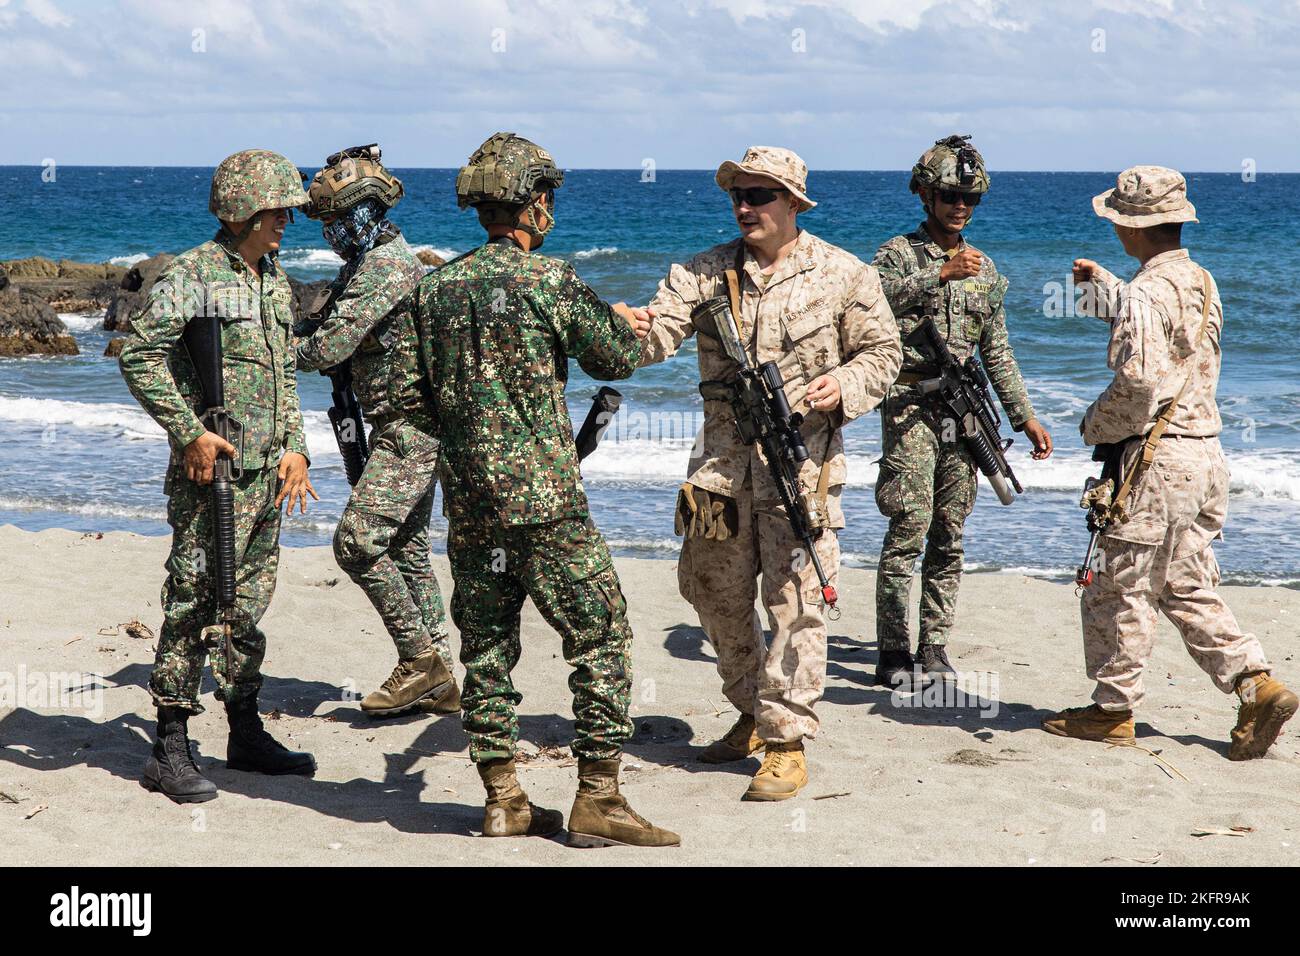 U.S. Marines mit Bataillon Landing Team 2/5, 31. Marine Expeditionary Unit, und Philippine Marines konsolidieren sich nach dem Üben von Manövriertechniken in Claveria, Philippinen, 3. Oktober 2022. Das bilaterale Training wurde im Rahmen der KAMANDAG 6 durchgeführt, um Taktiken, Techniken und Verfahren auszutauschen. KAMANDAG ist eine jährliche bilaterale Übung zwischen den Streitkräften der Philippinen und dem US-Militär, die darauf ausgerichtet ist, Interoperabilität, Fähigkeiten, Vertrauen und Zusammenarbeit zu stärken, die über Jahrzehnte hinweg gemeinsam genutzt wurde. Stockfoto